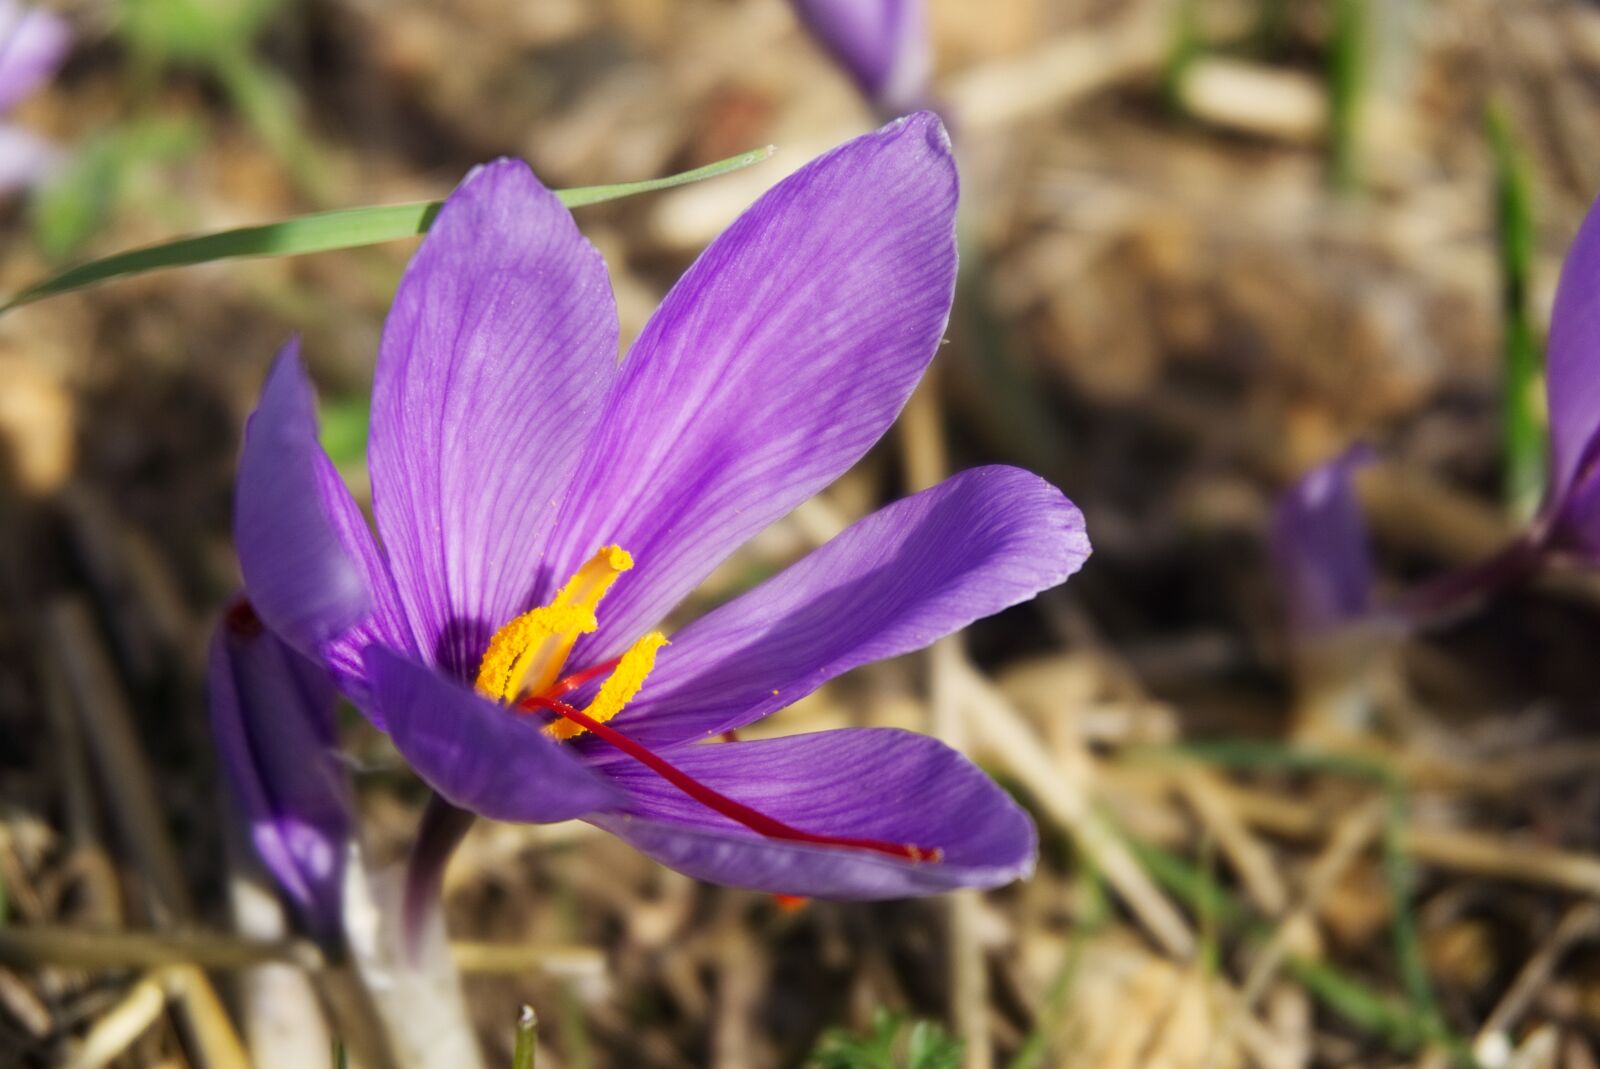 Sony a6000 sample photo. Saffron, crocus sativus, saffron photography